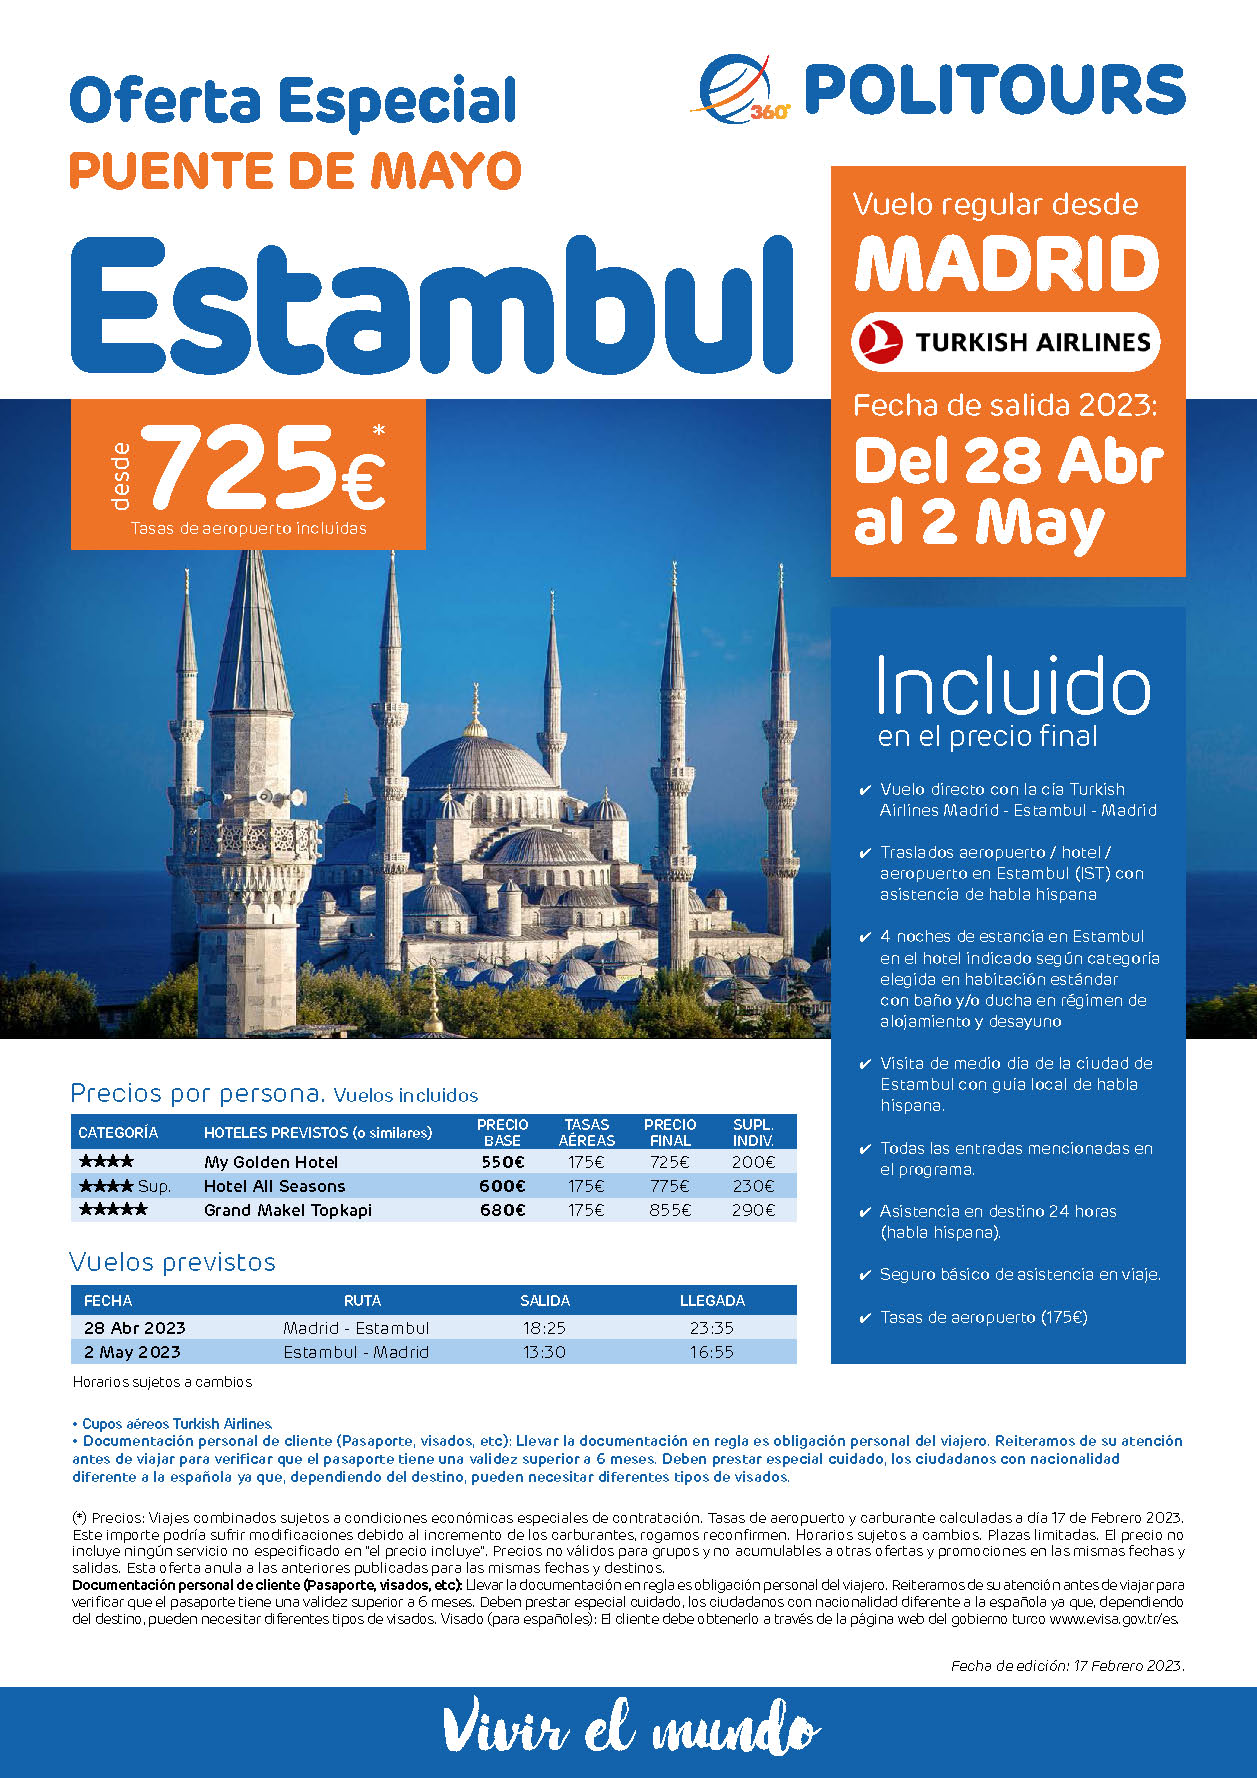 Oferta Politours Puente de Mayo 2023 en Estambul Turquia 5 dias salida 28 de Abril en vuelo directo desde Madrid Turkish Airlines